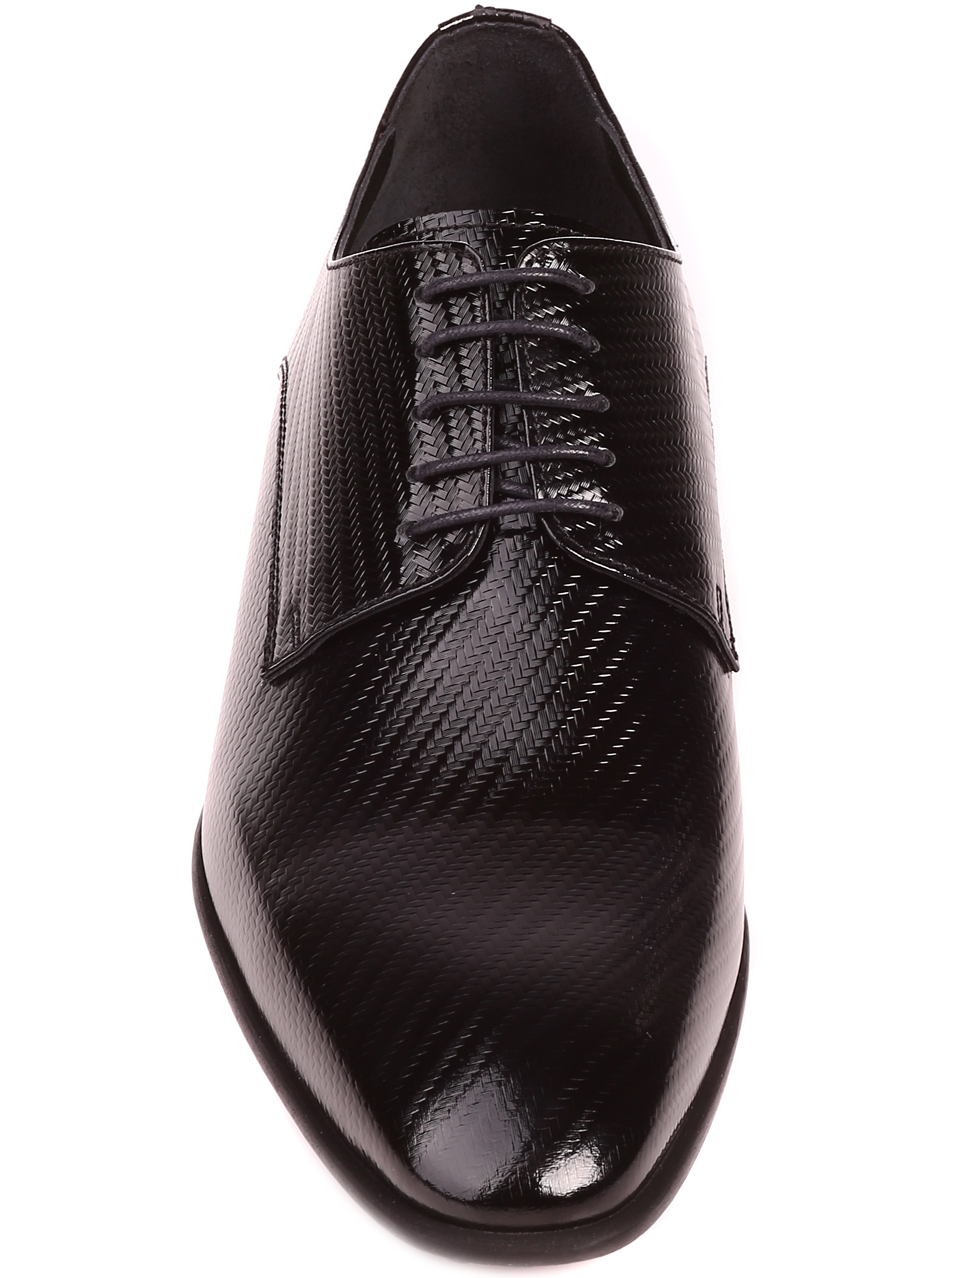 Елегантни мъжки обувки от естествен лак 7AT-22289 black